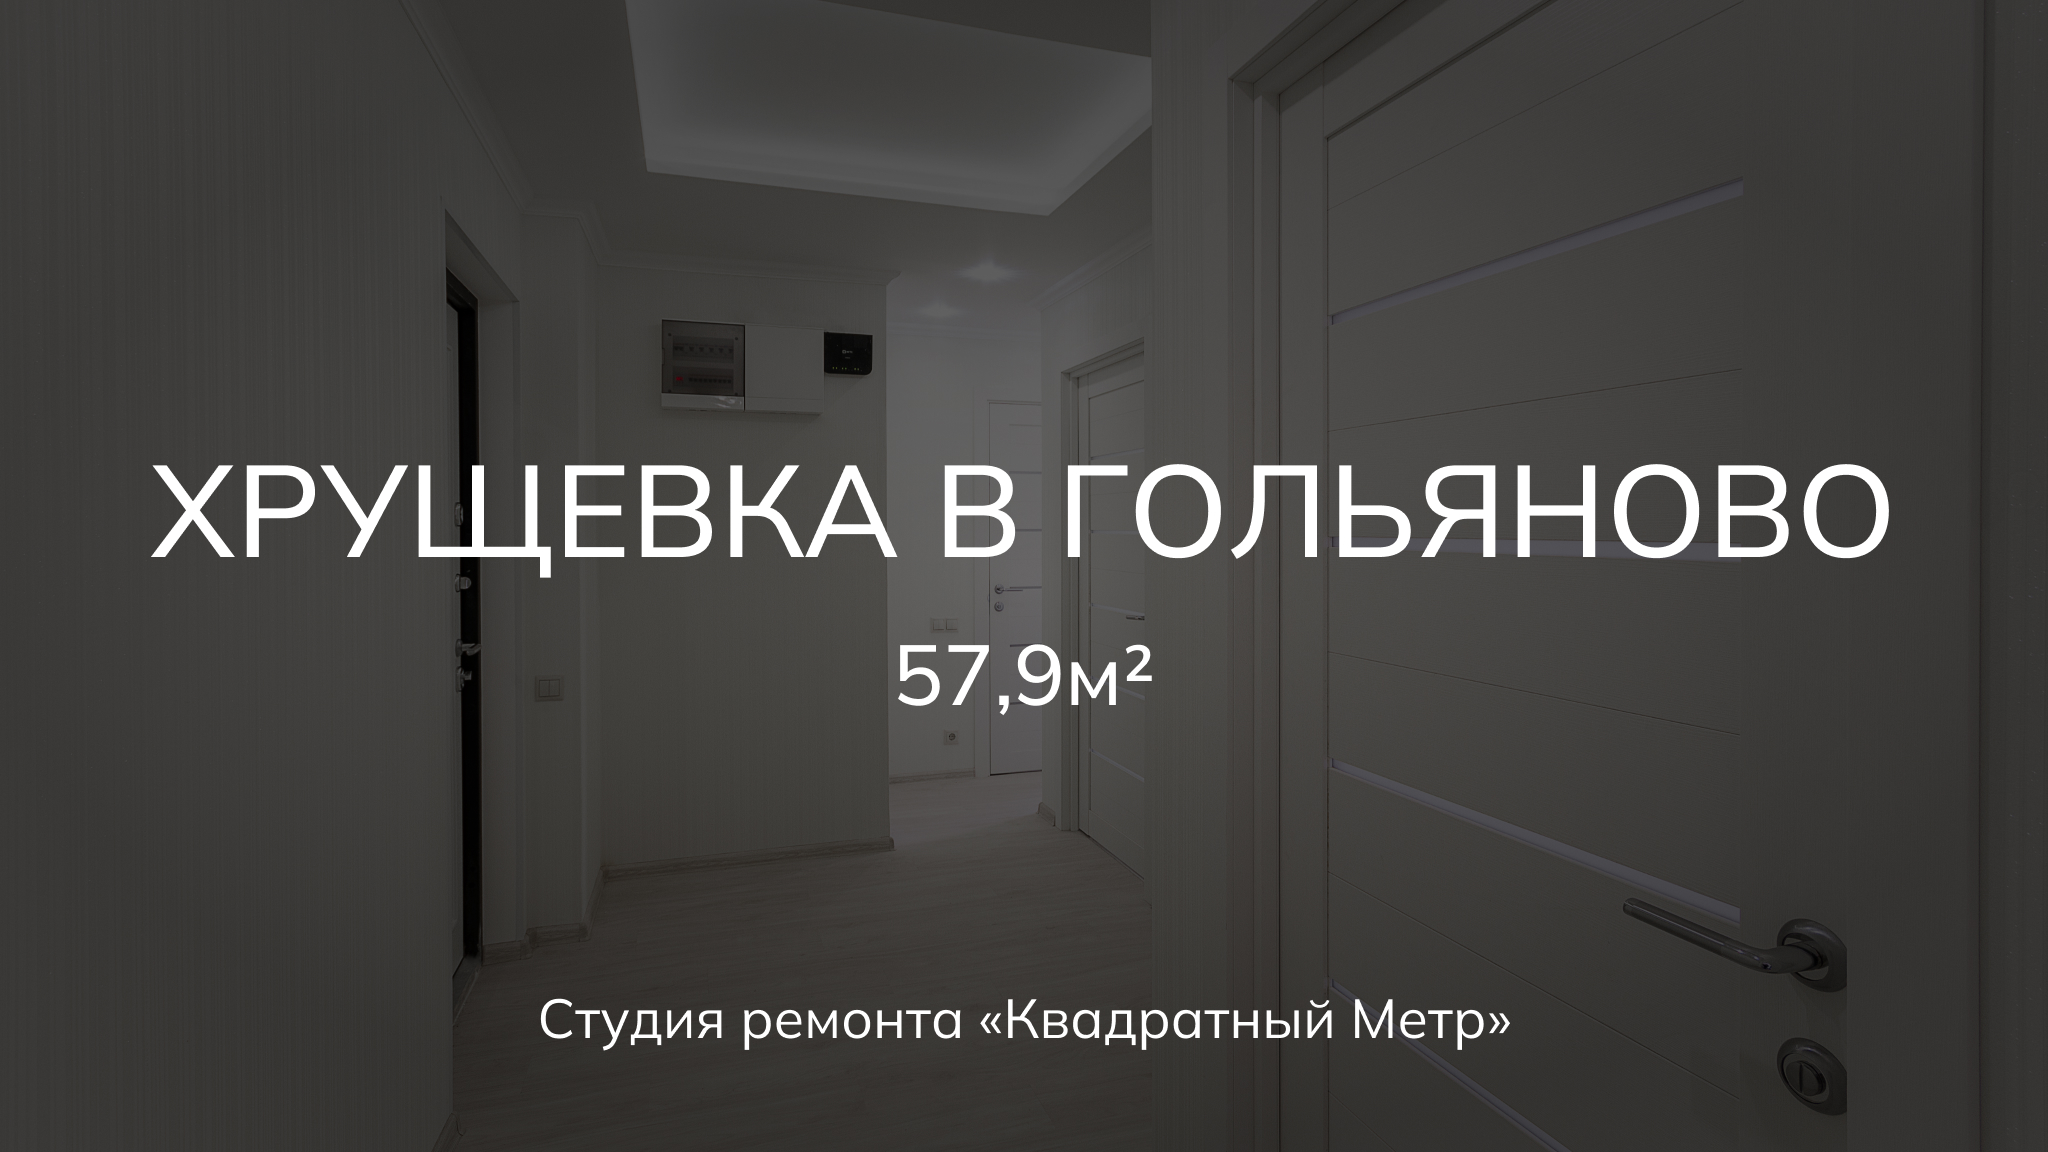 Ремонт 3х комнатной квартиры 57,9м2 #ремонтквартирымосква